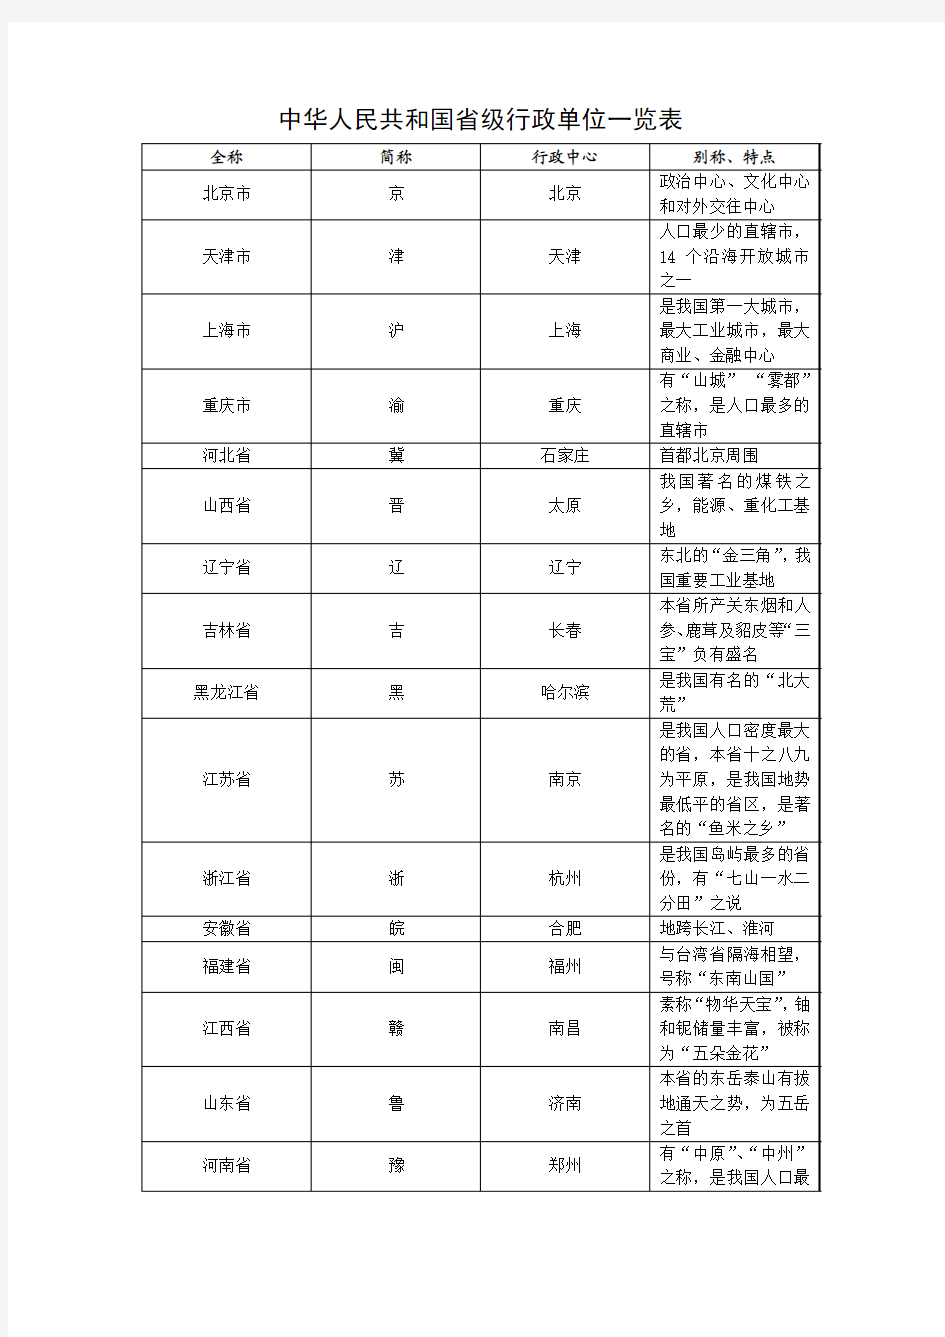 中华人民共和国省级行政单位一览表